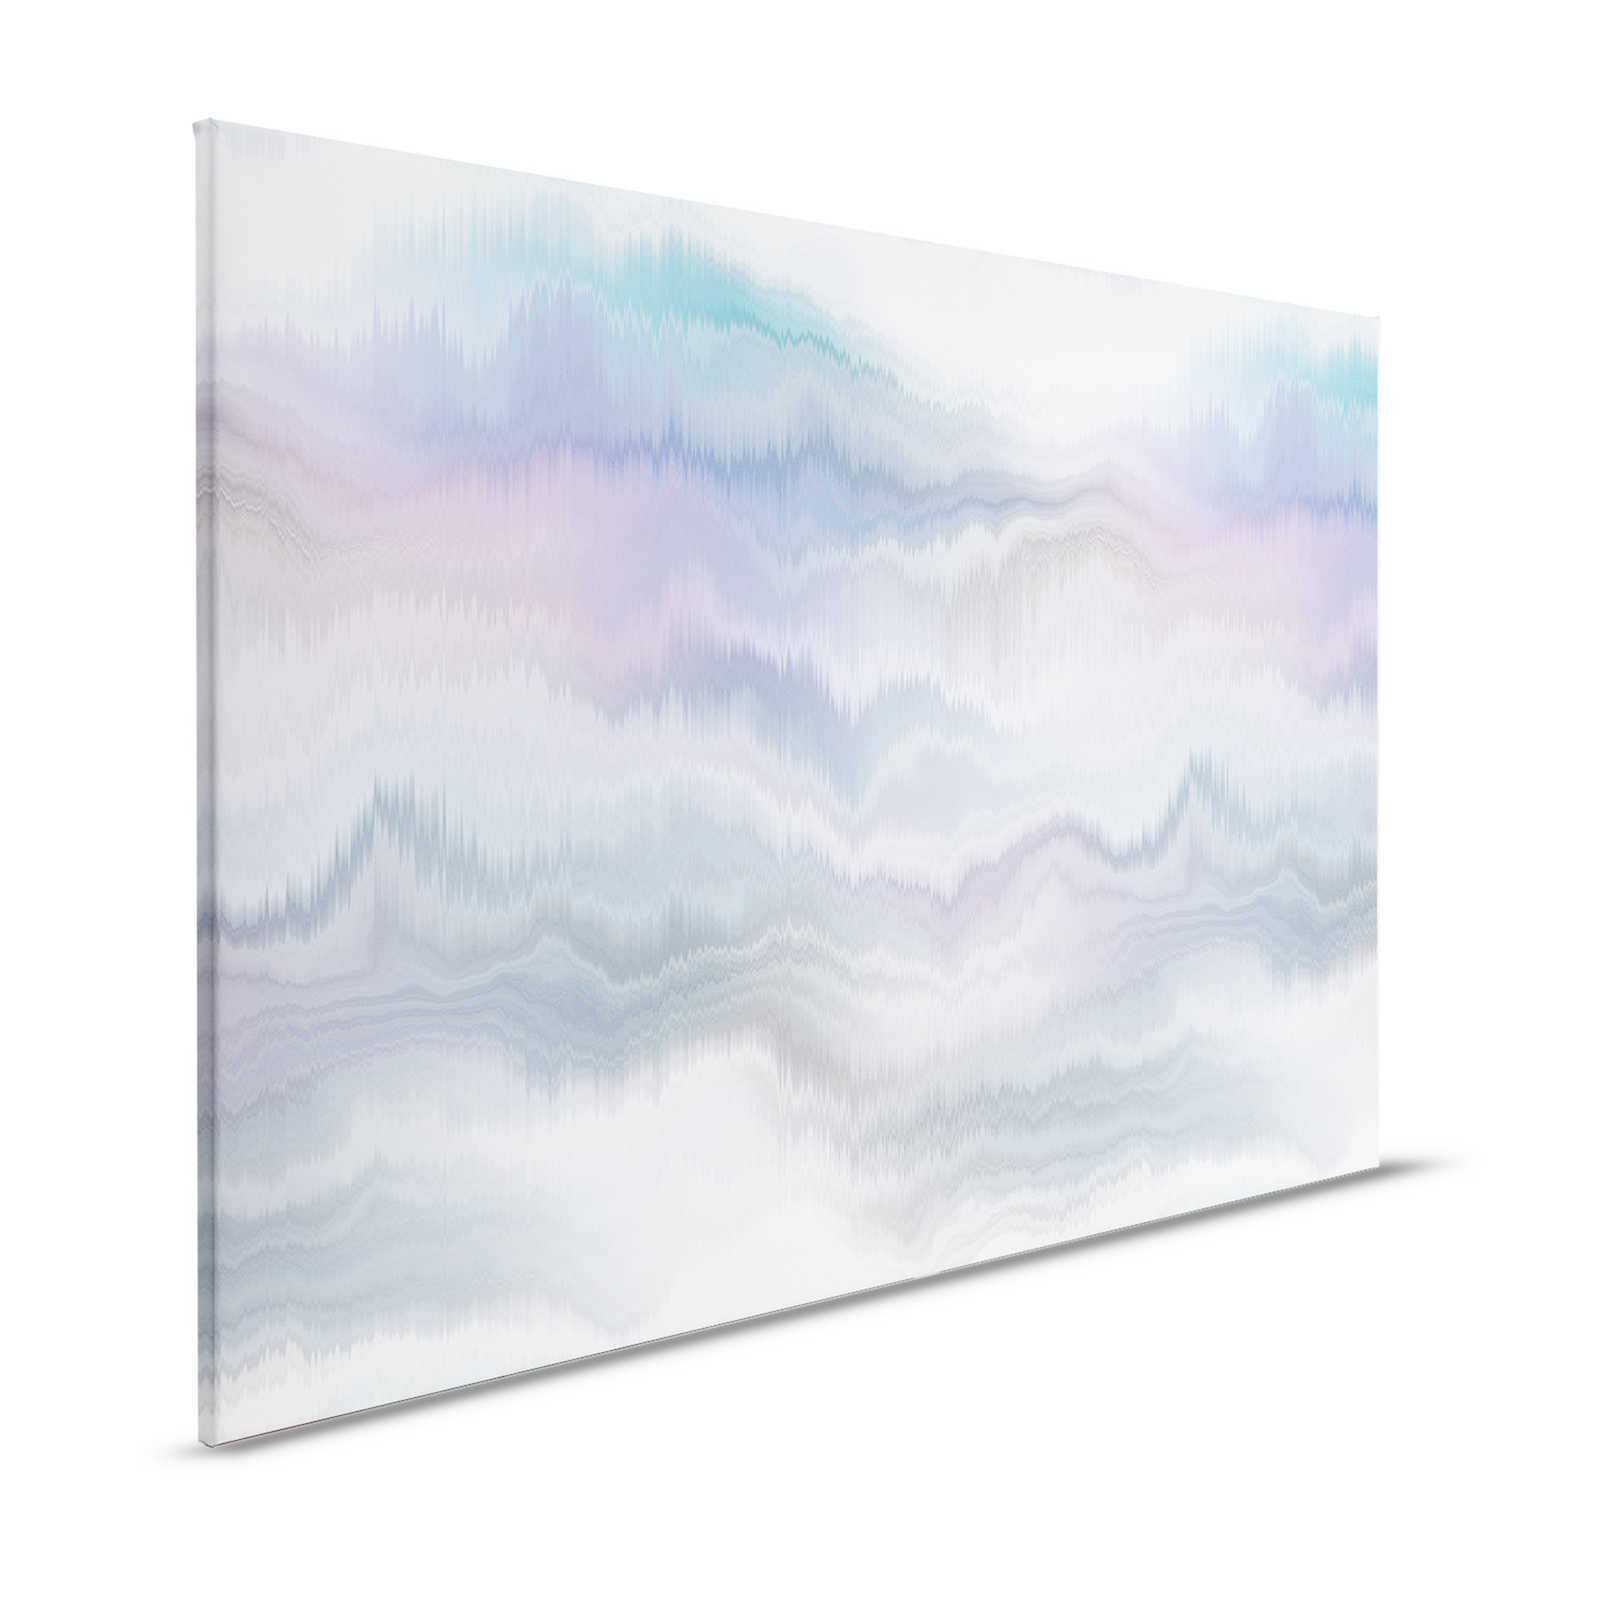 Pastel Palace 1 - Canvas schilderij Pastelkleuren, abstract landschap - 1,20 m x 0,80 m
